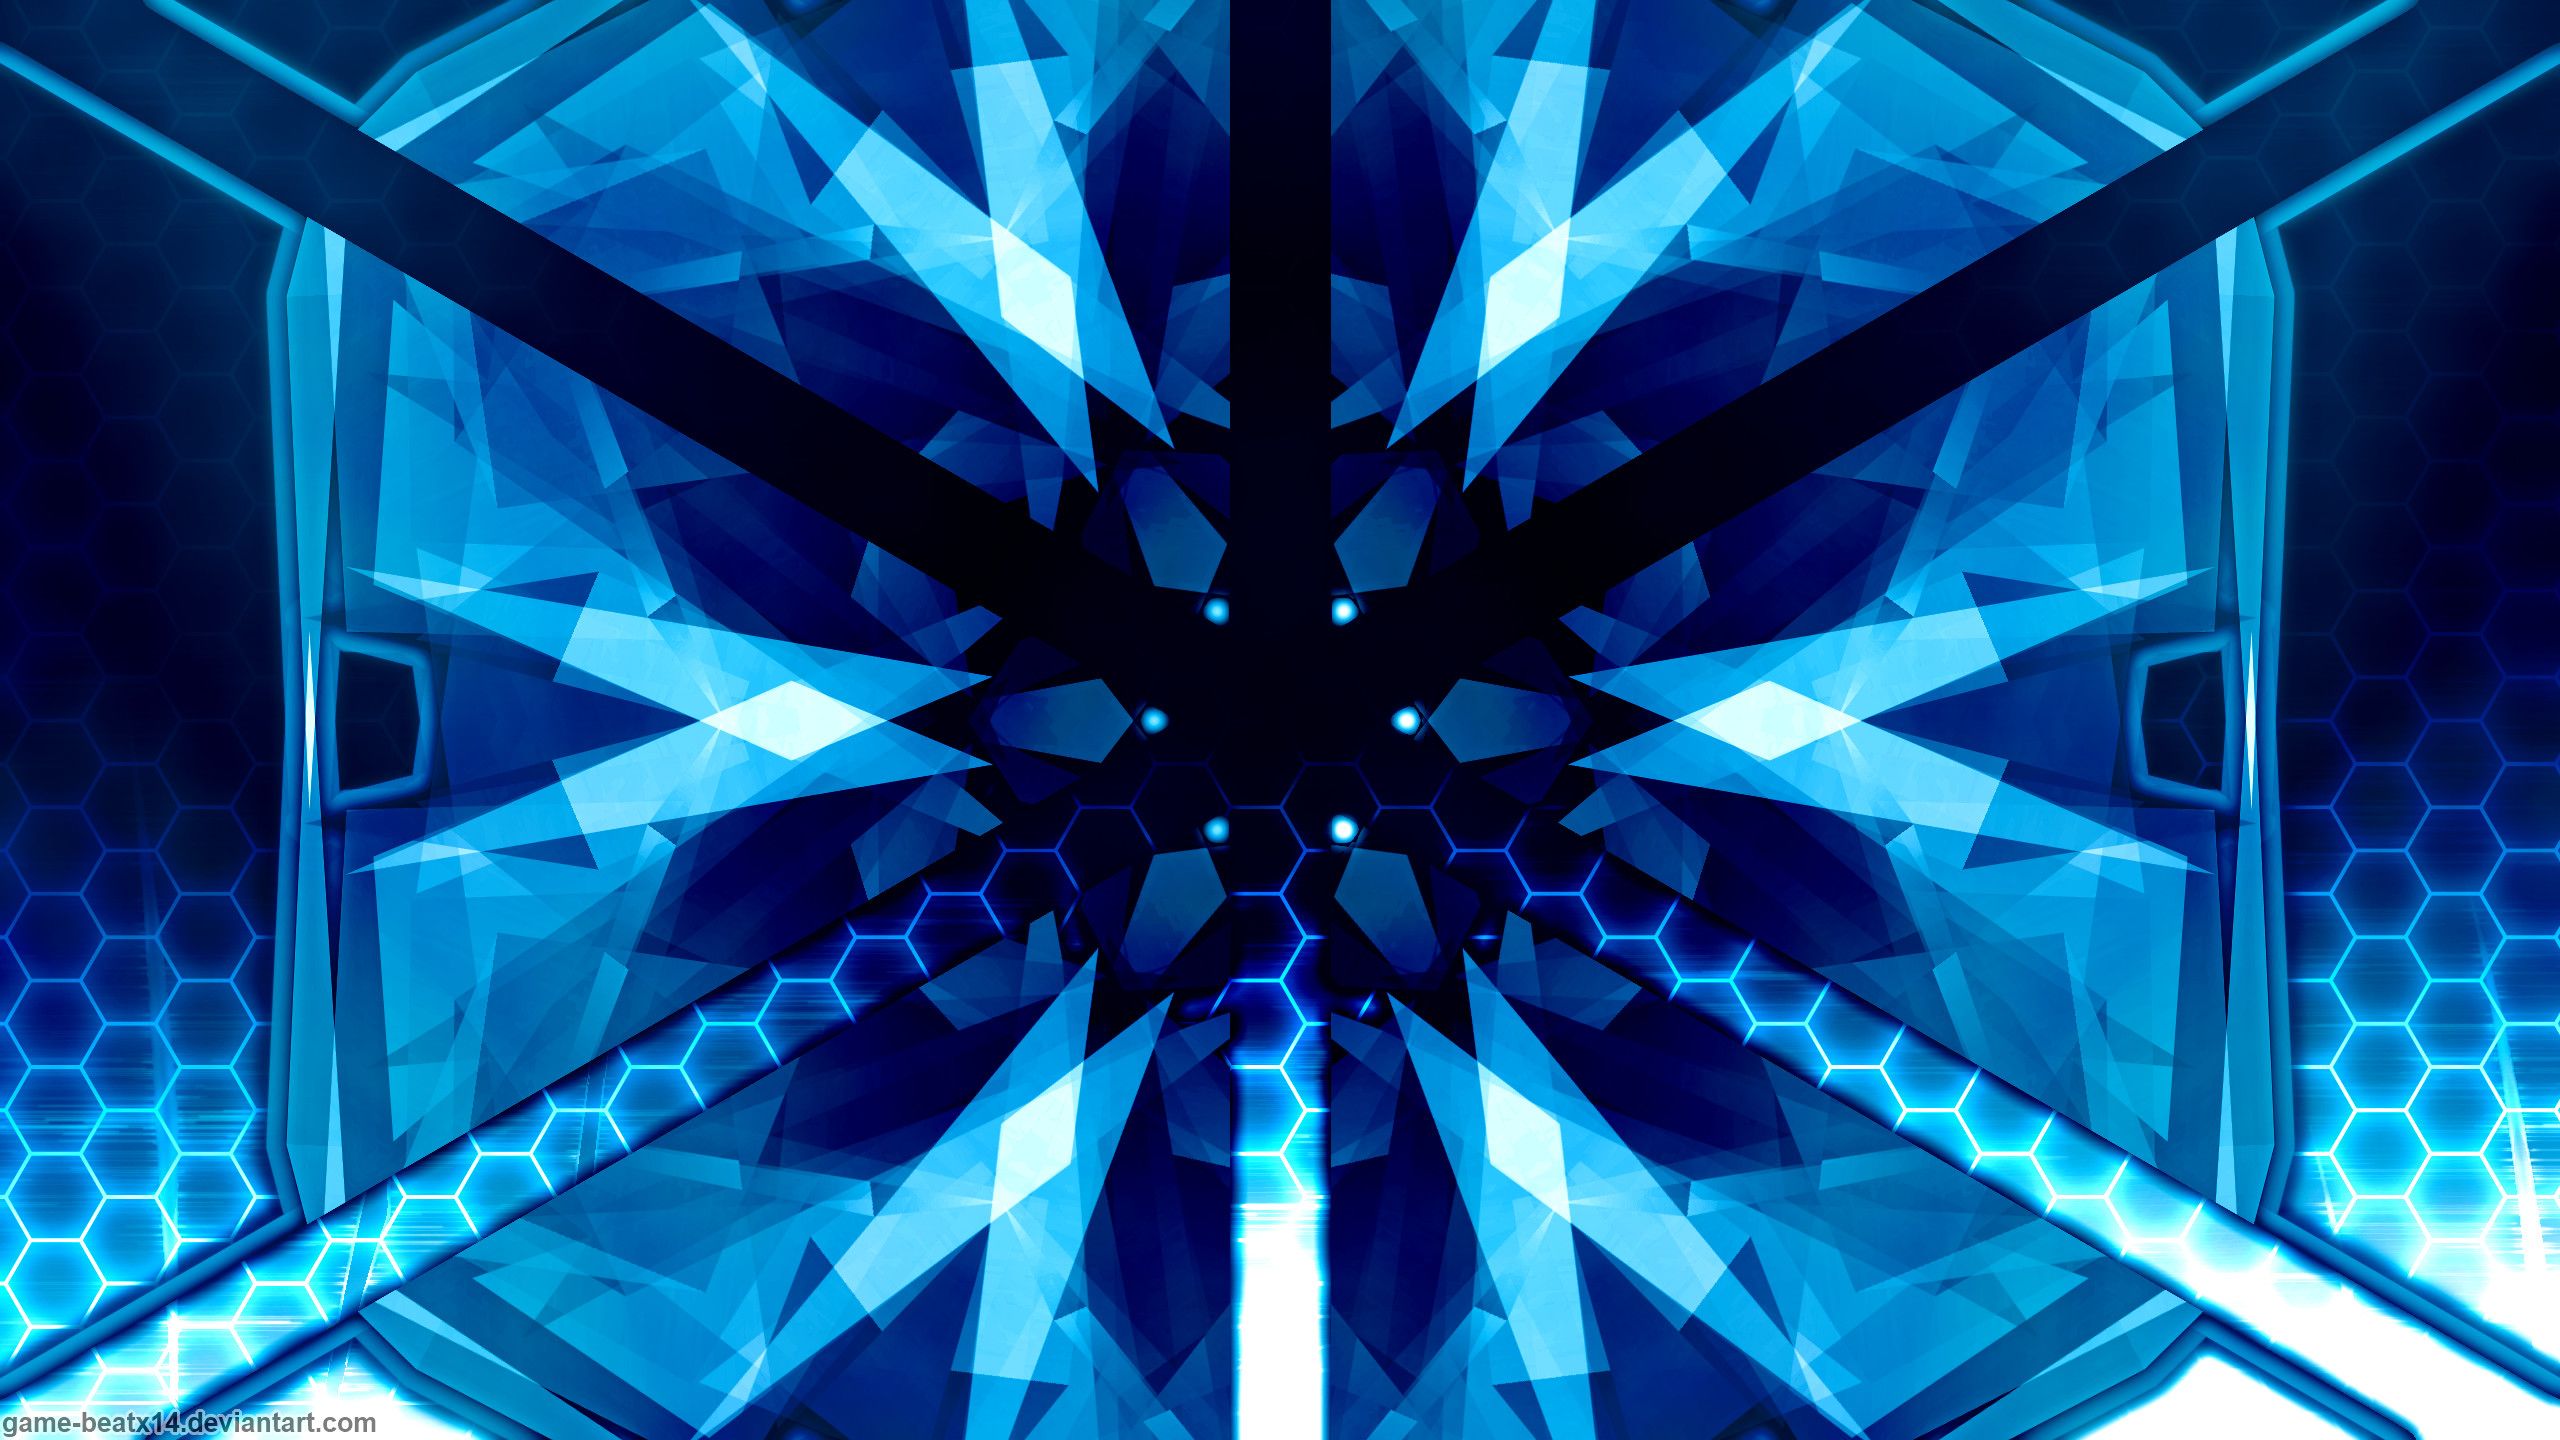 Blue Gaming Wallpaper 4K : Abstract Gaming Wallpaper 4k 2560x1440